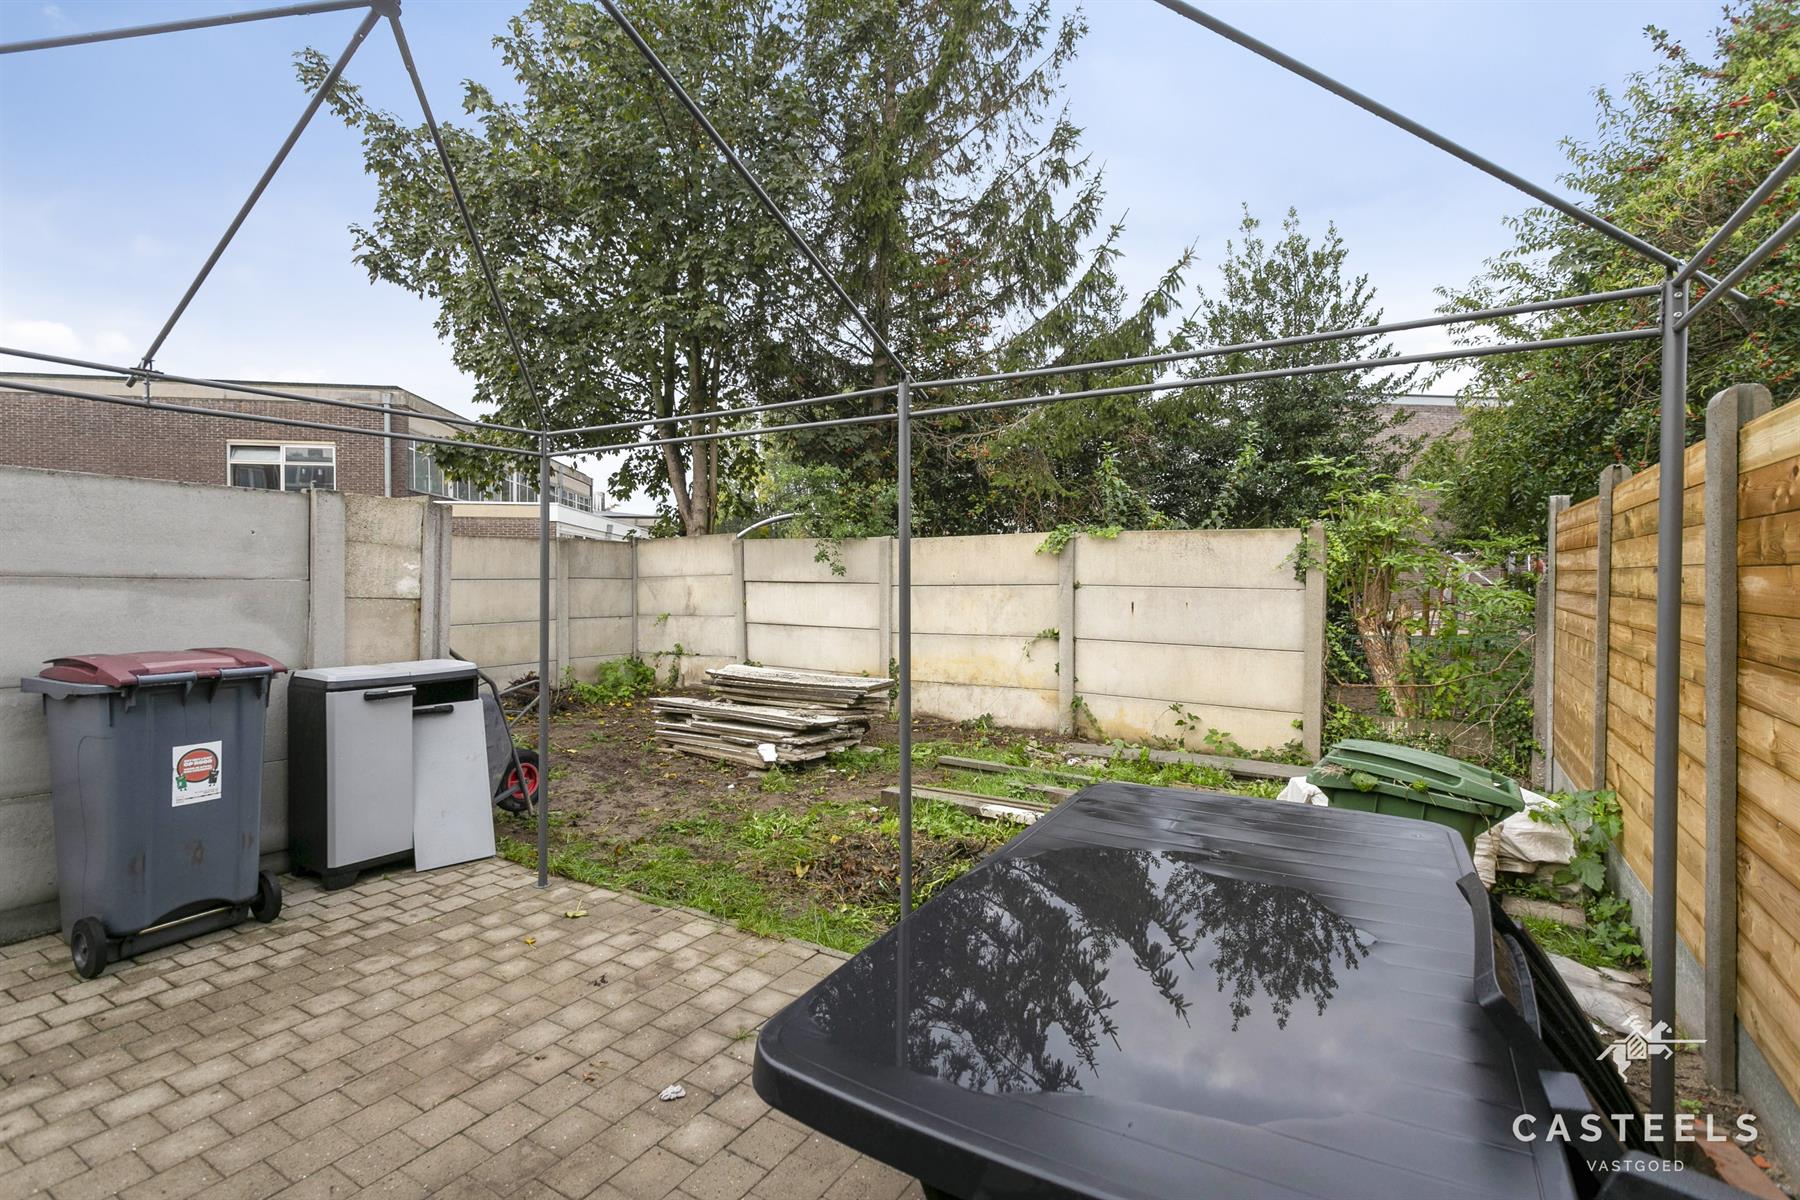 Afbeelding Instapklare woning met tuin te koop in Zelzate - Casteels Vastgoed